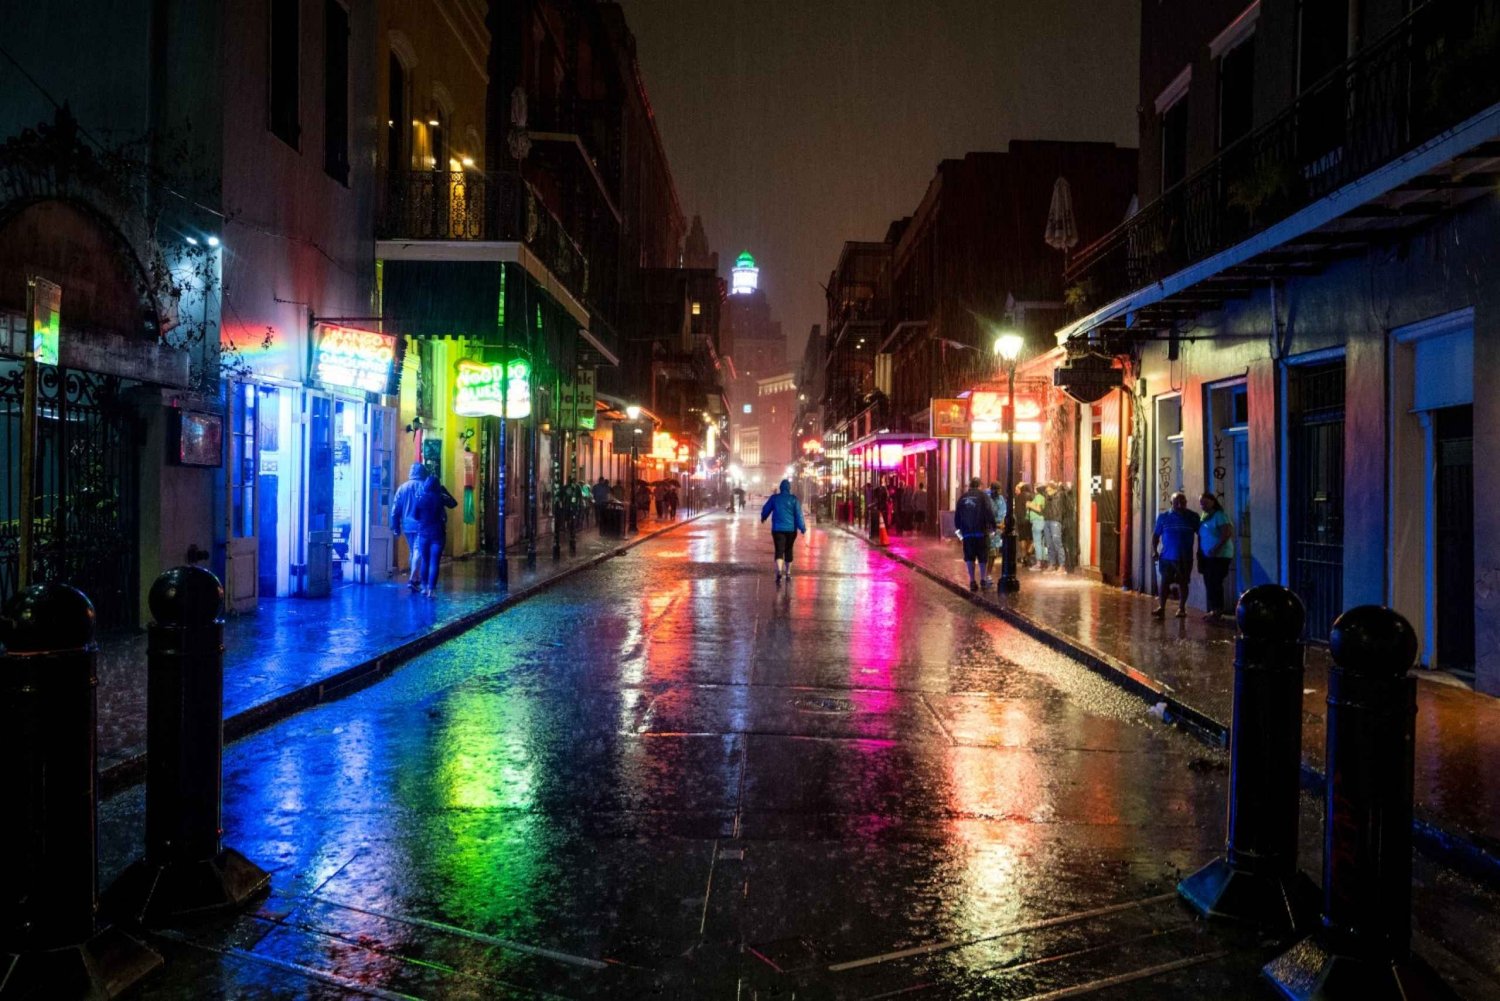 Selvguidet audio-spøgelsestur i New Orleans på 6 sprog